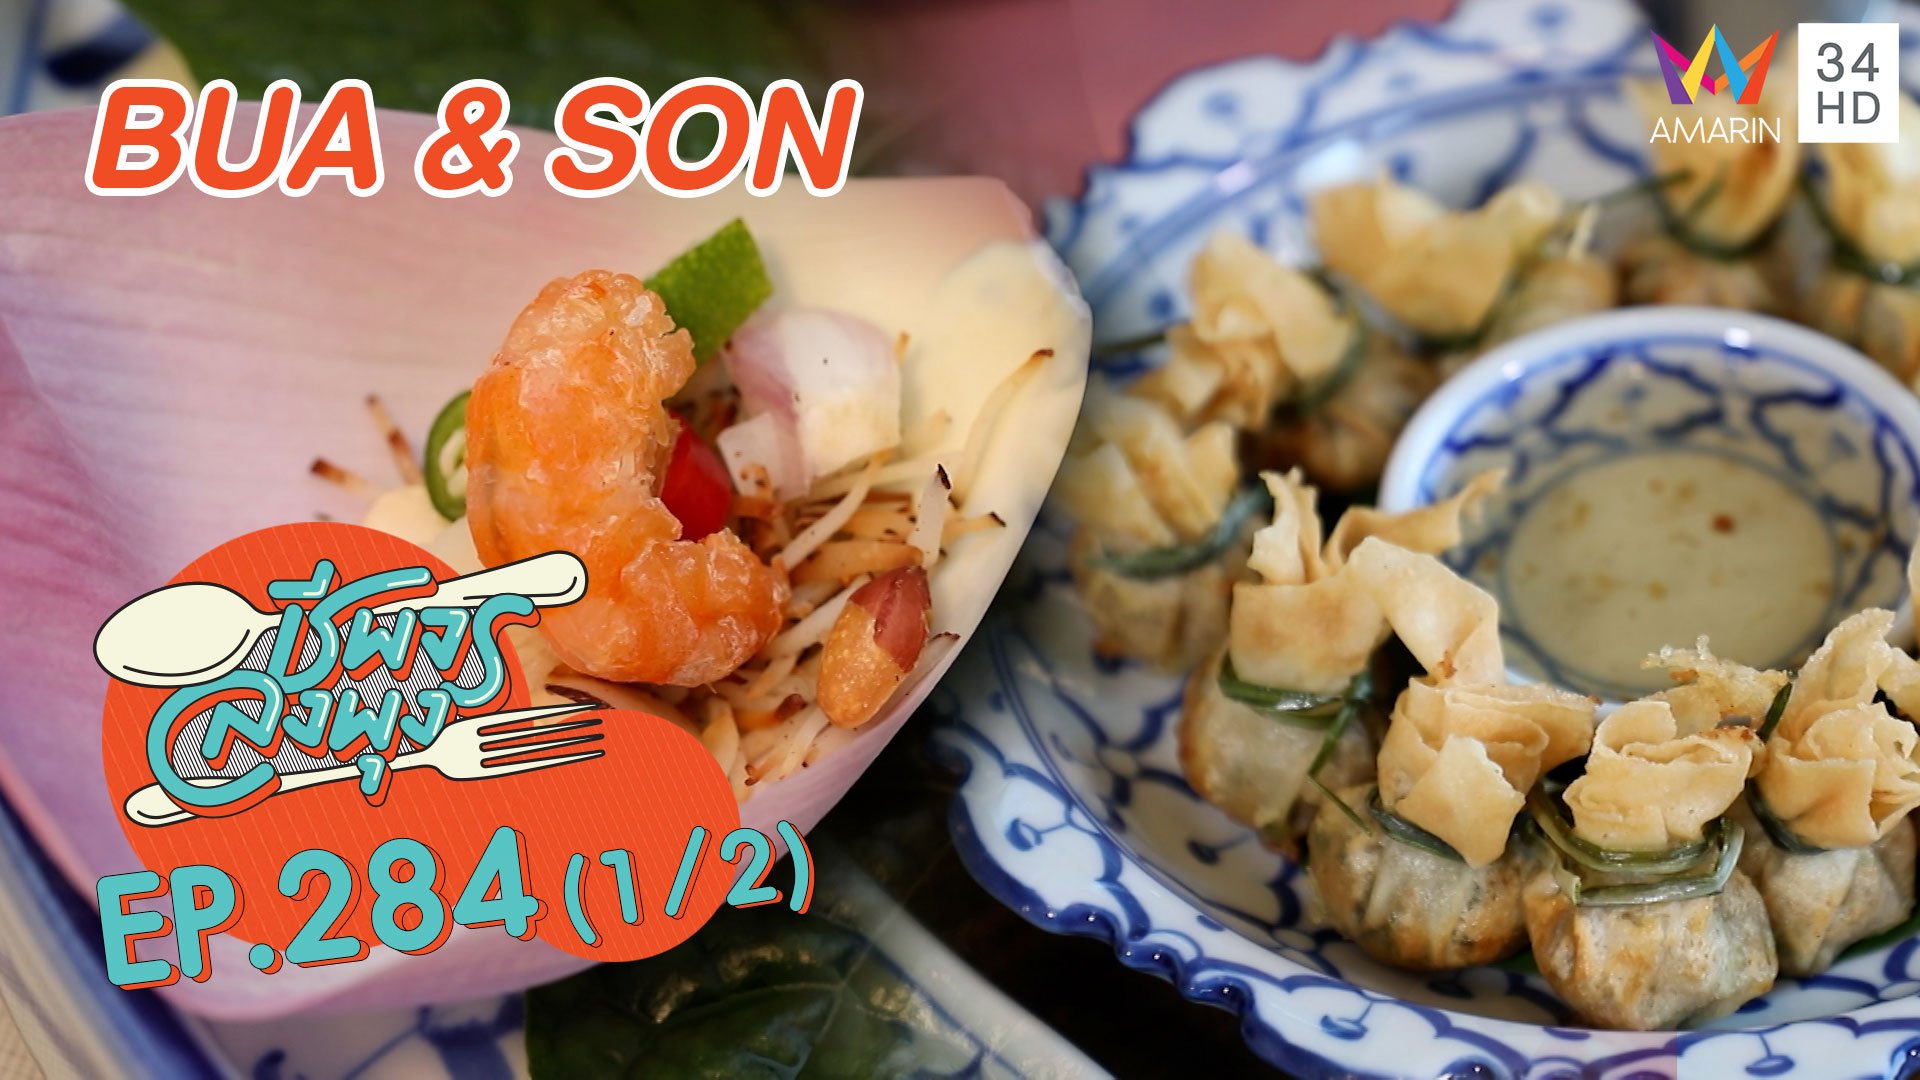 ลิ้มรสอาหารไทยชาววัง ร้าน BUA & SON | ชีพจรลงพุง | 13 มี.ค. 64 (1/2) | AMARIN TVHD34